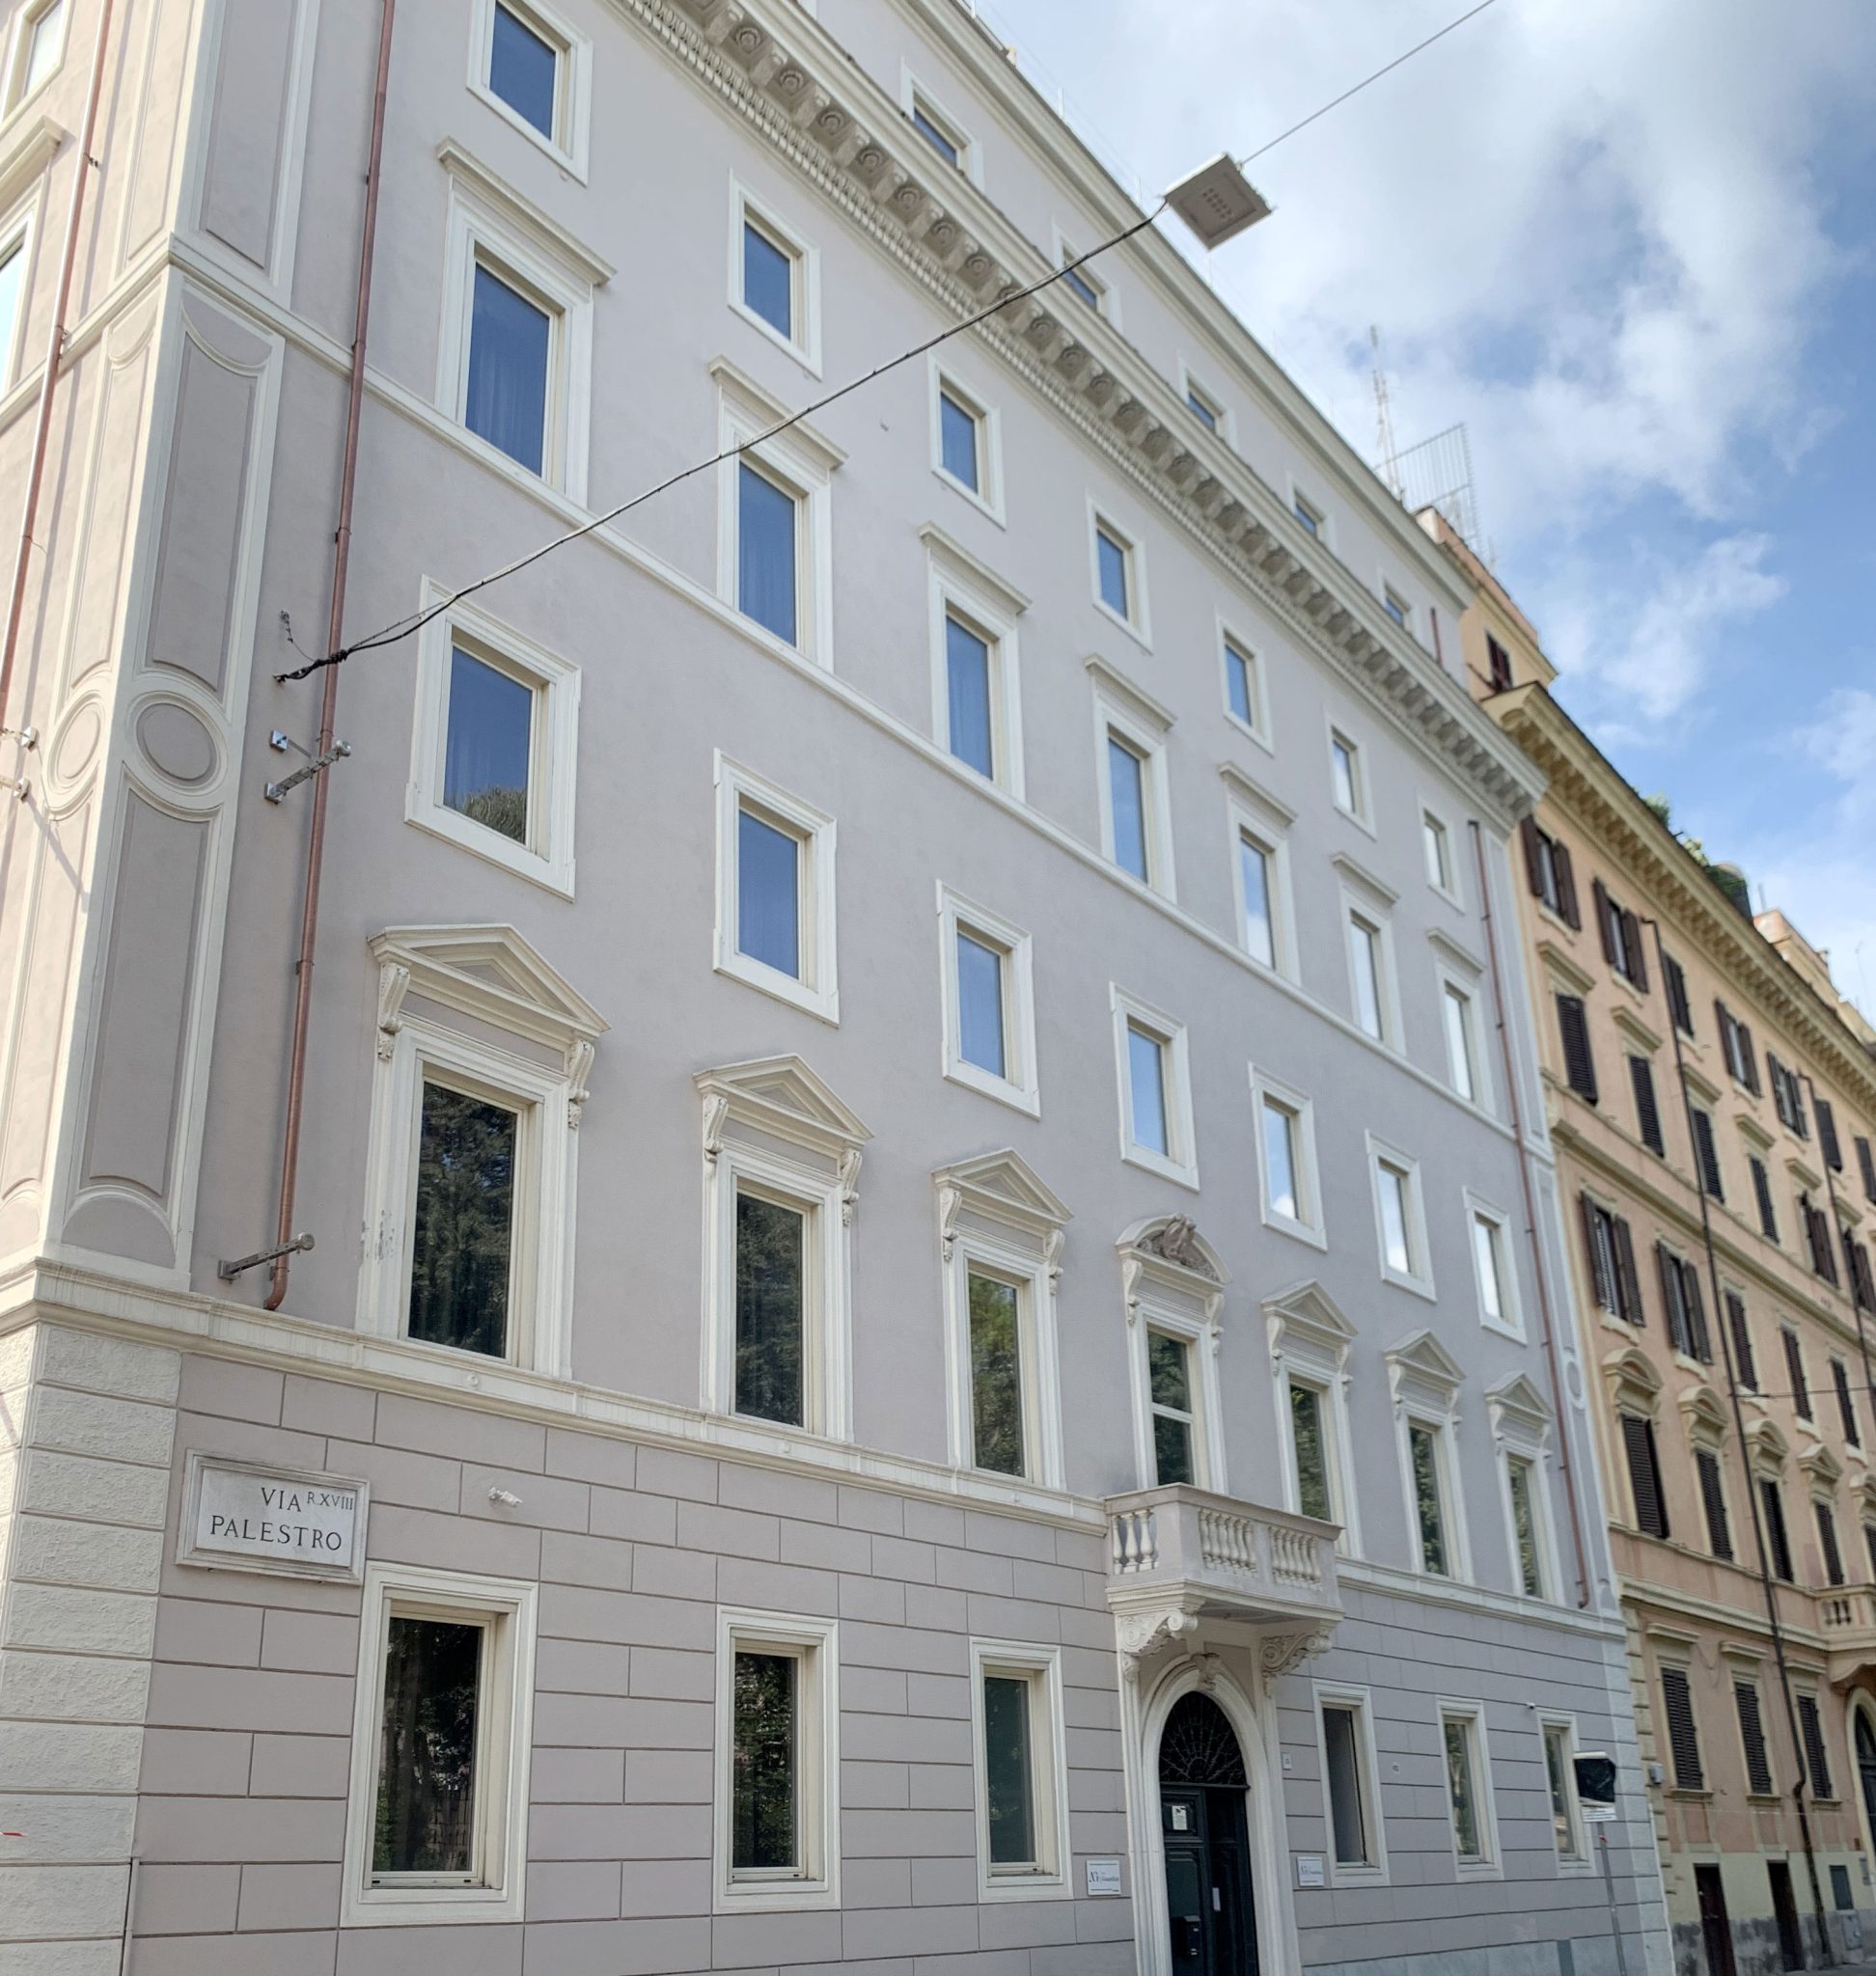 THE GUARDIAN HOTEL - ROME - Ceccaroli Architettura